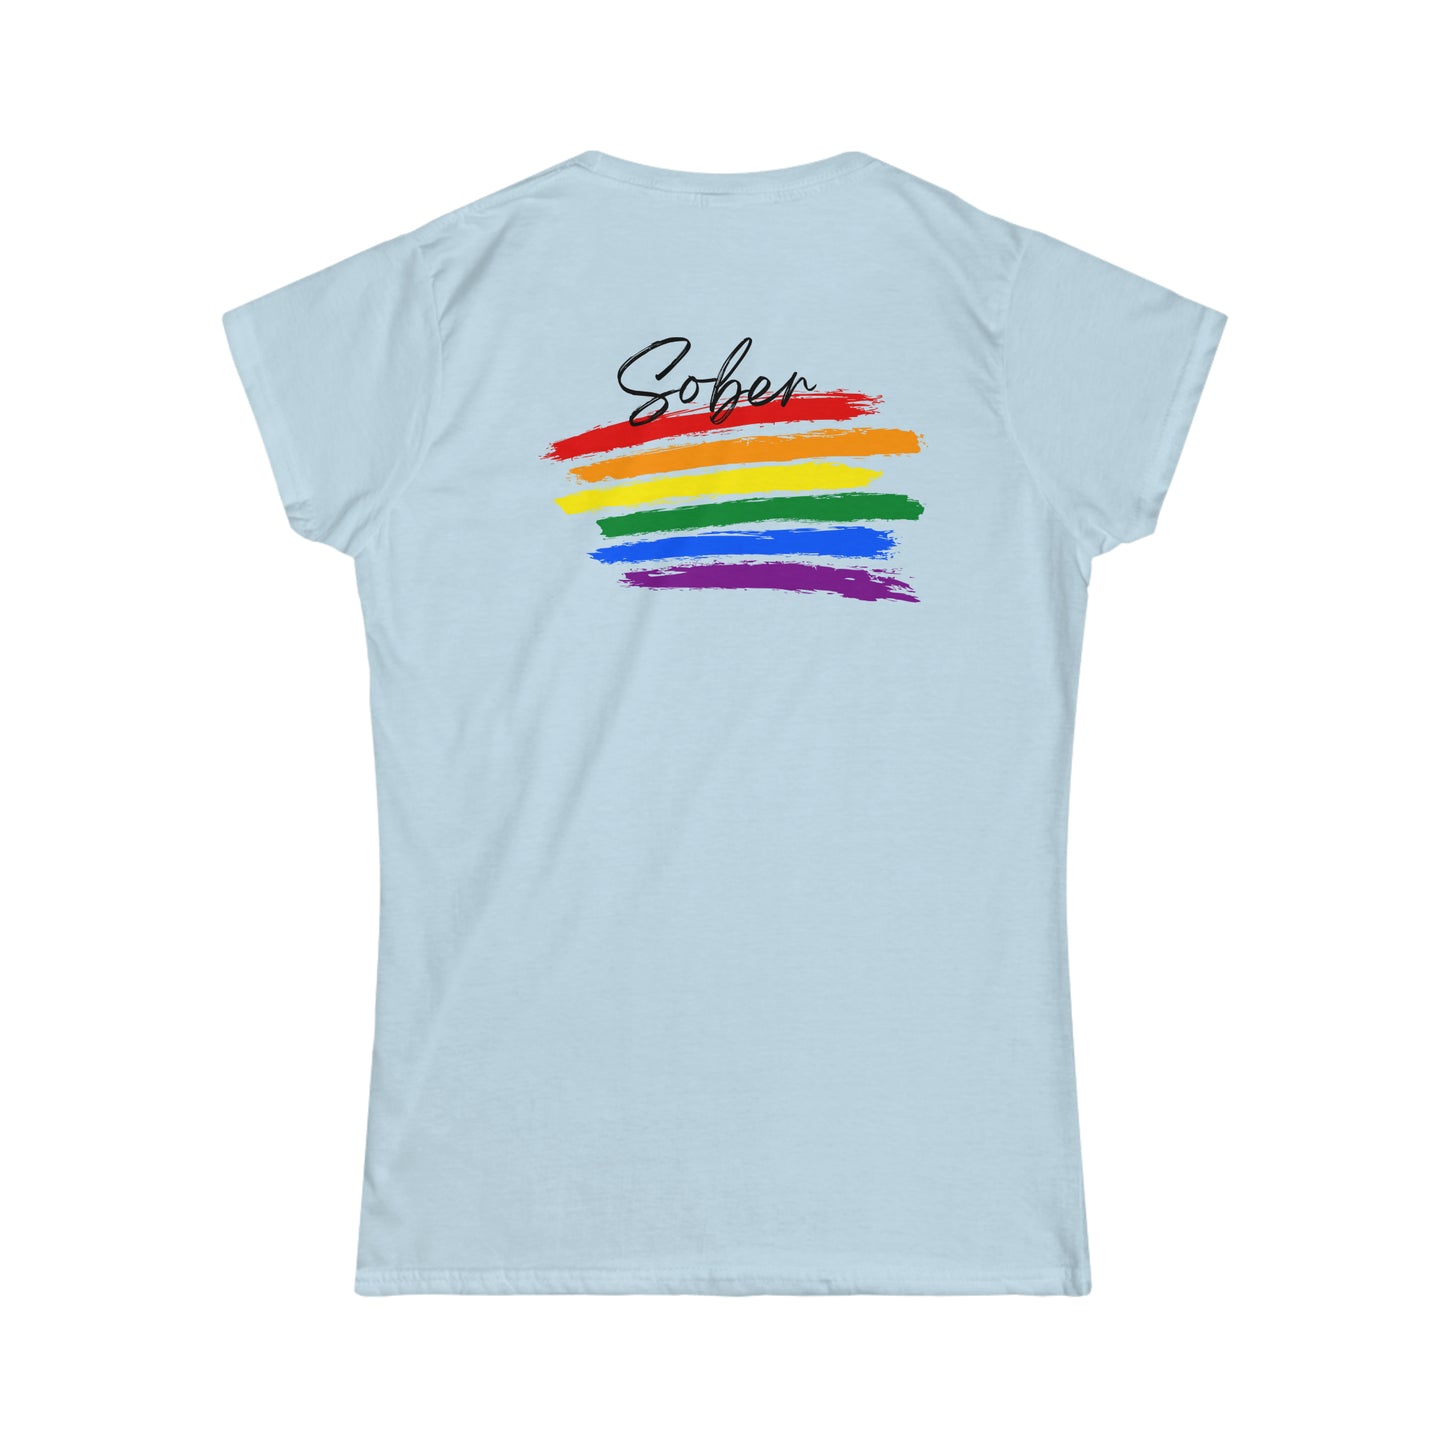 "Rainbow Stripes" Femme Cap Sleeve 2-sided Tee